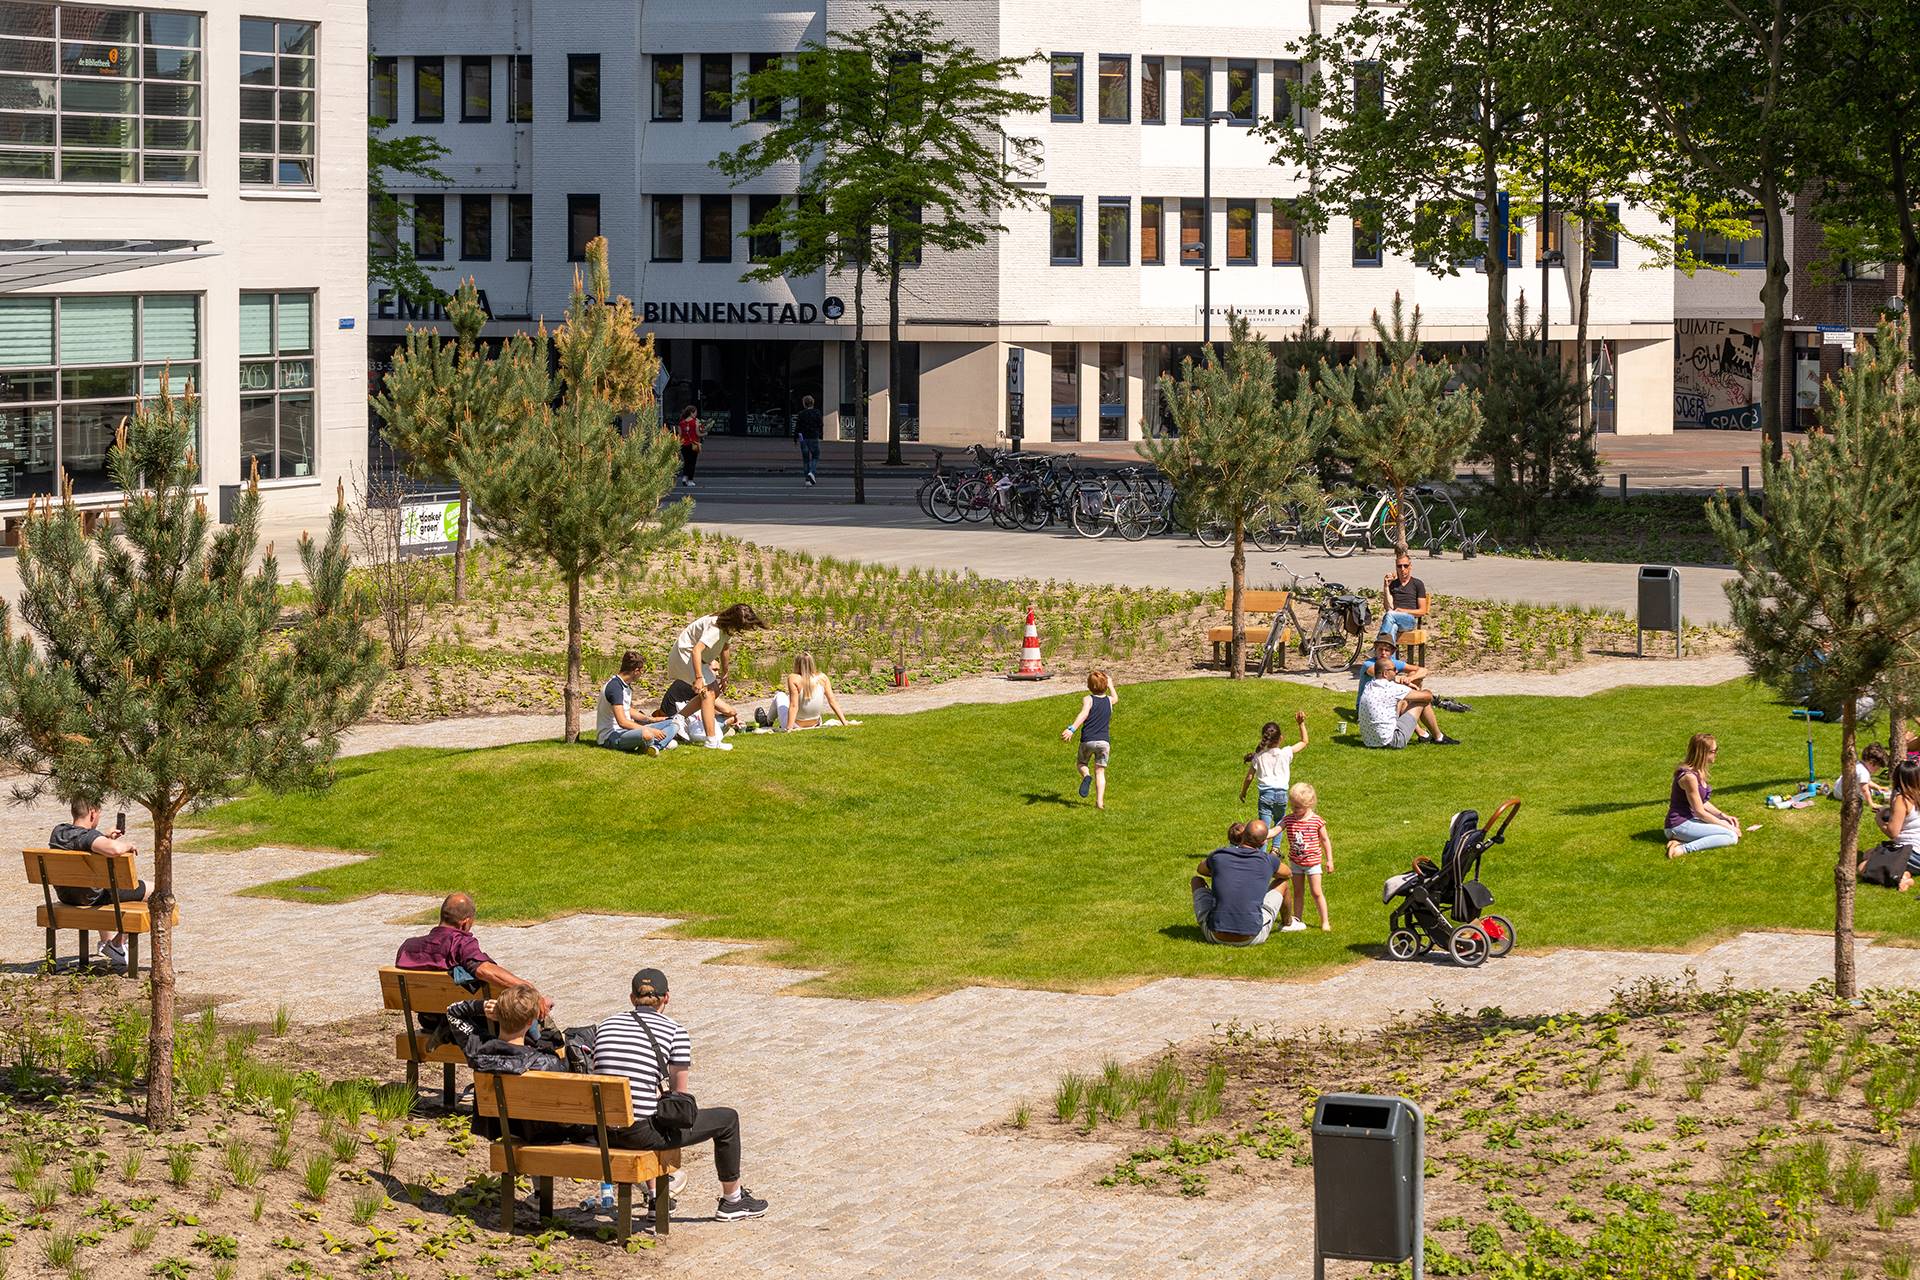 stadspark ontstaan uit substraten voor open grond